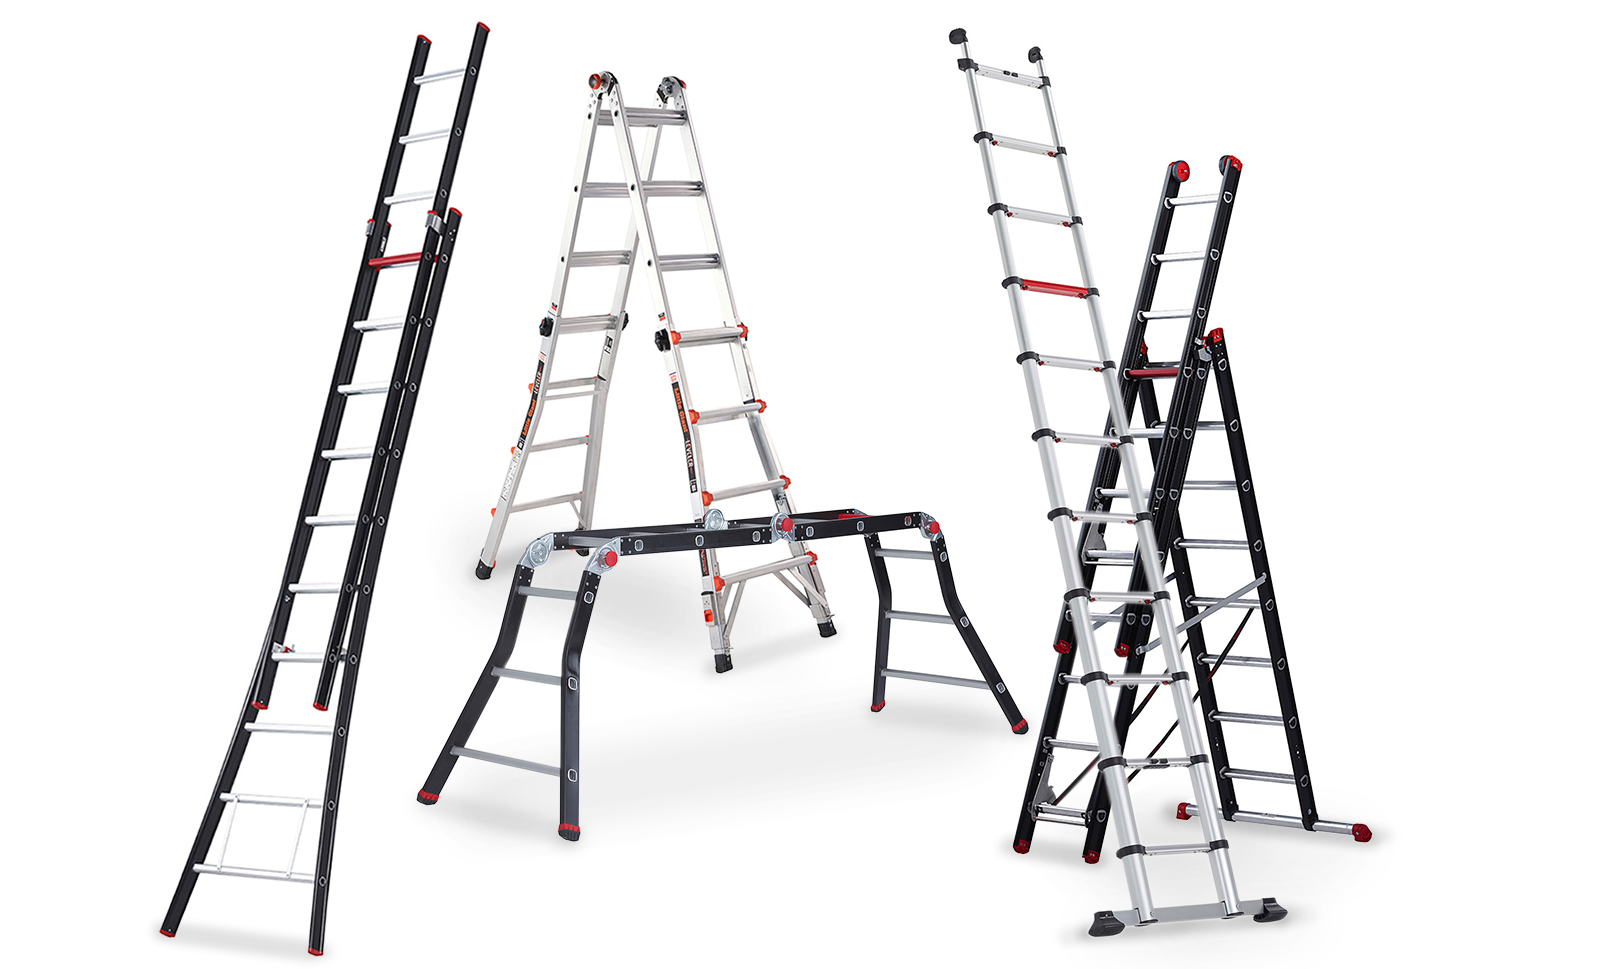 Bekijk ons grote assortiment ladders bij Kruizinga